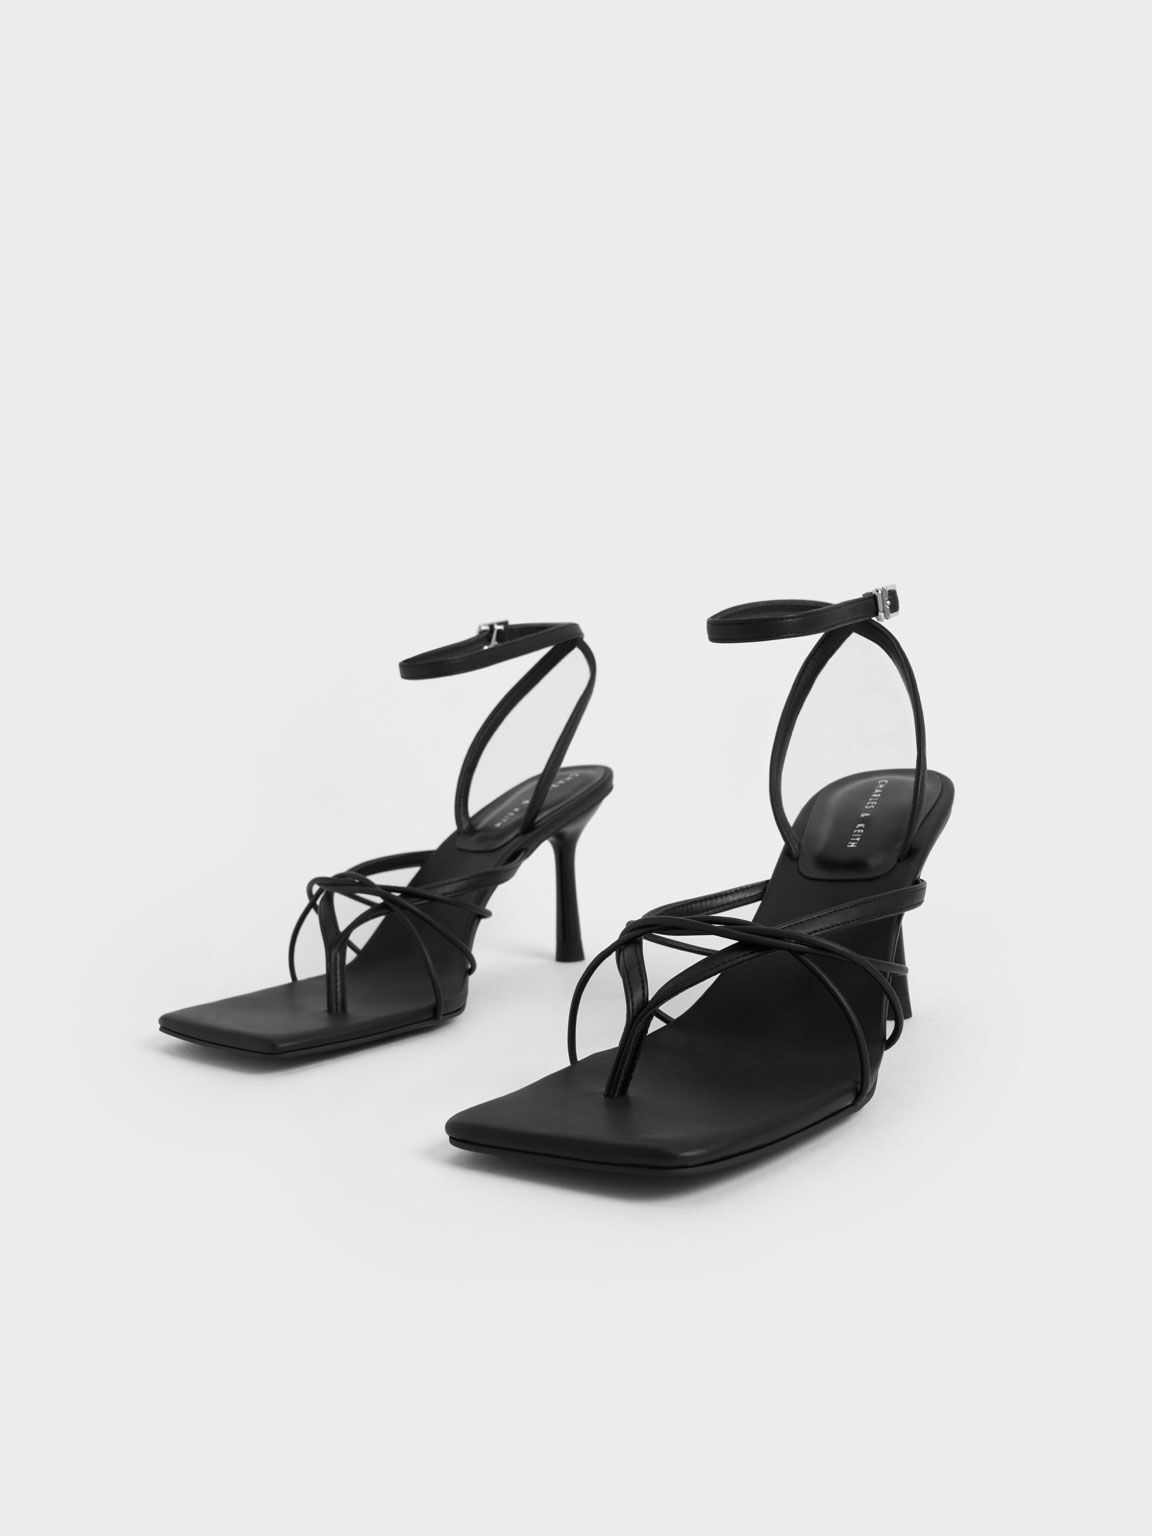 Sandal Thong Ankle Strap, Black, hi-res